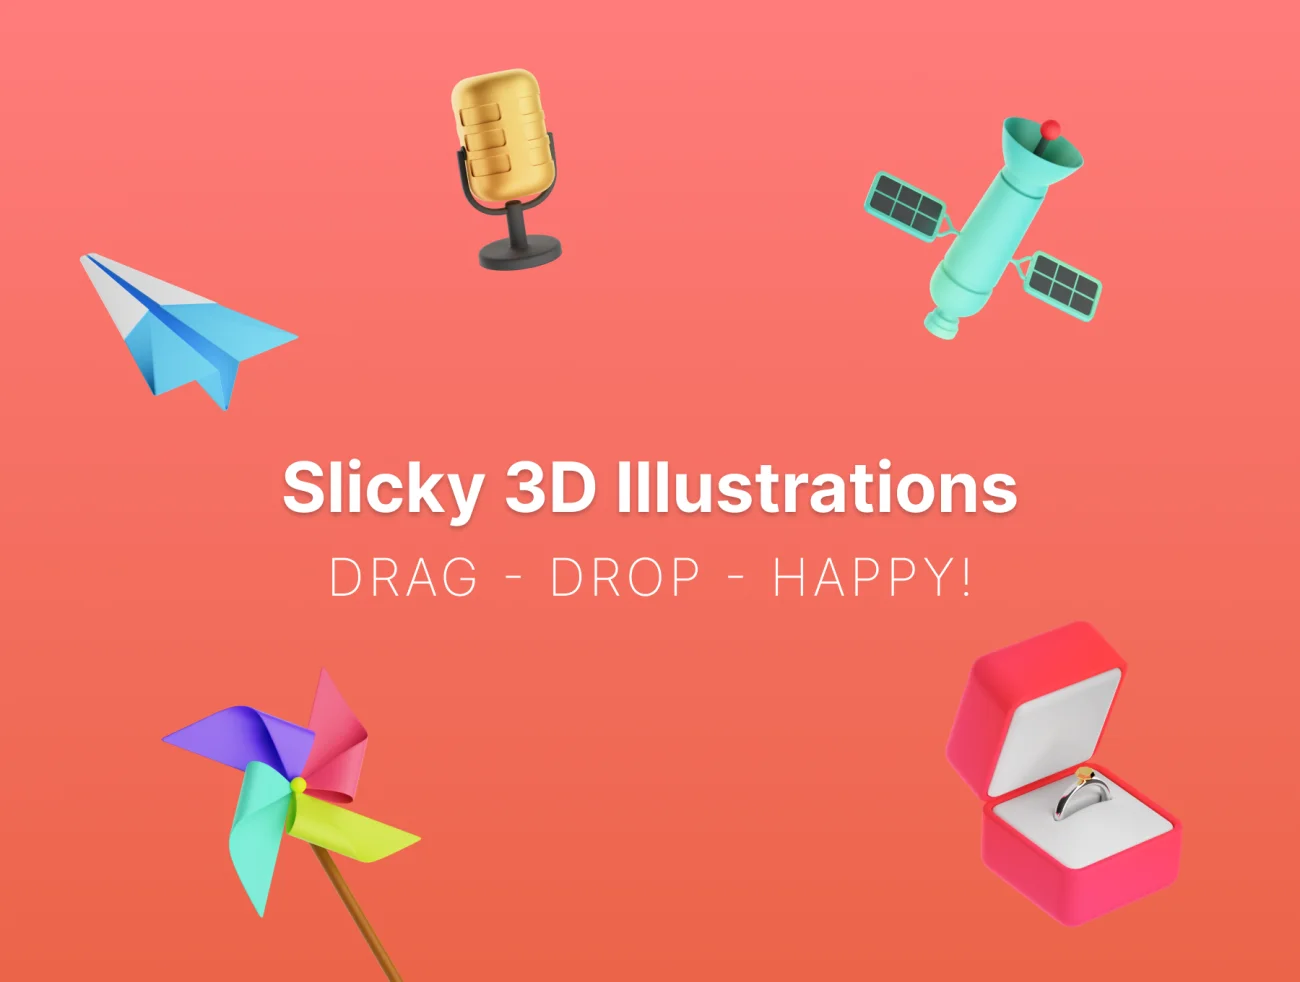 50款超现代酷炫3D图标合集 Slicky 3D Illustrations插图1